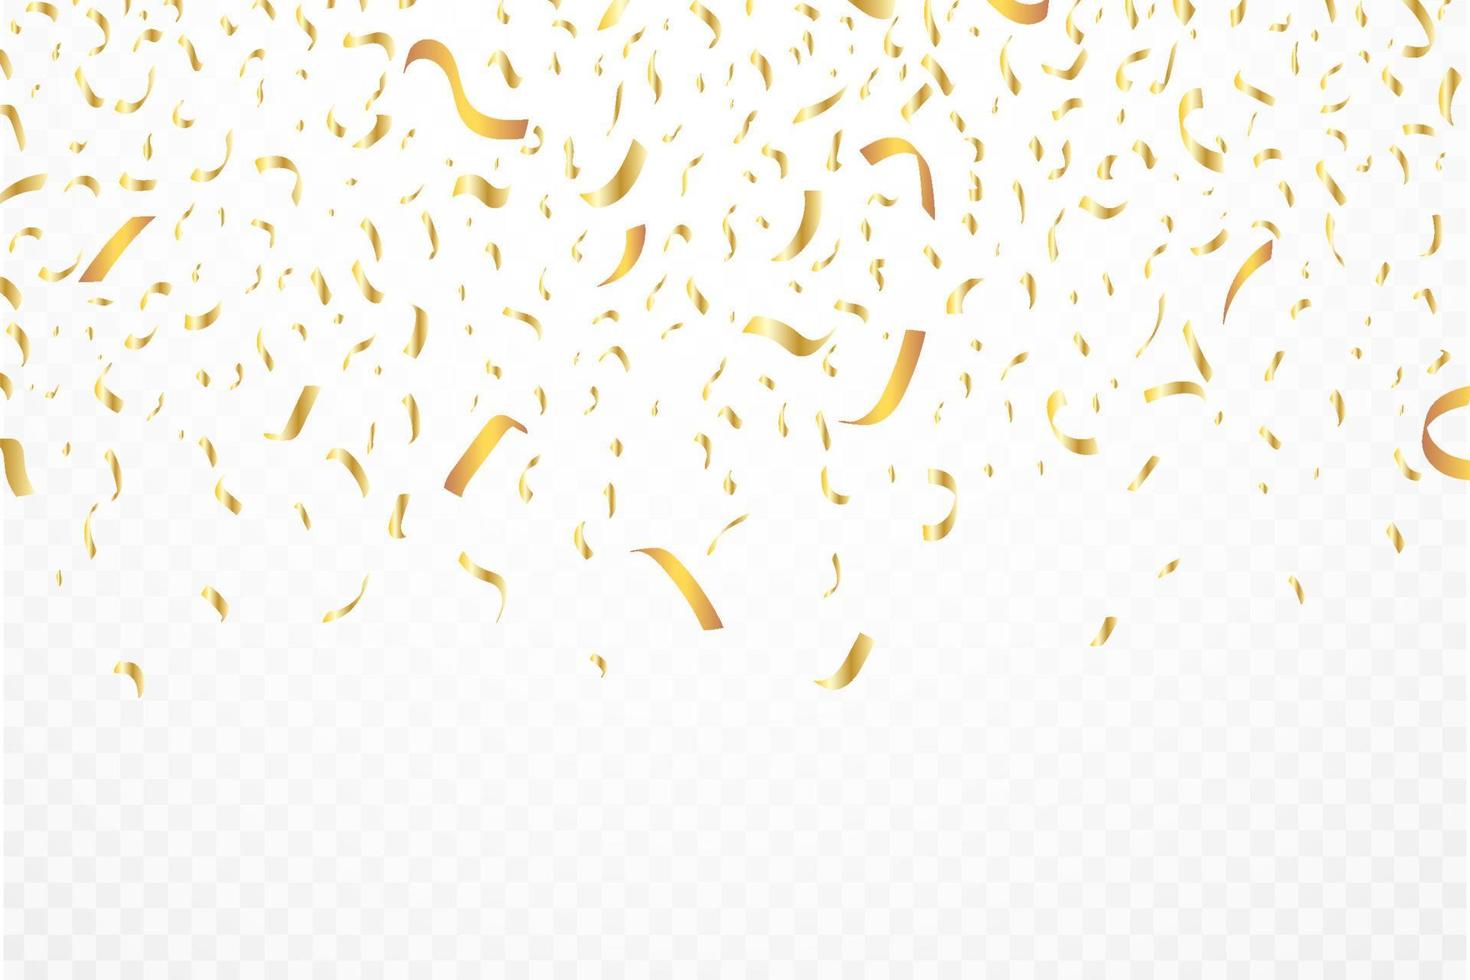 confete e vetor de fundo de folha. fita dourada realista e ilustração de confetes caindo. confete dourado isolado em fundo transparente. elementos do festival. celebração da festa de aniversário.